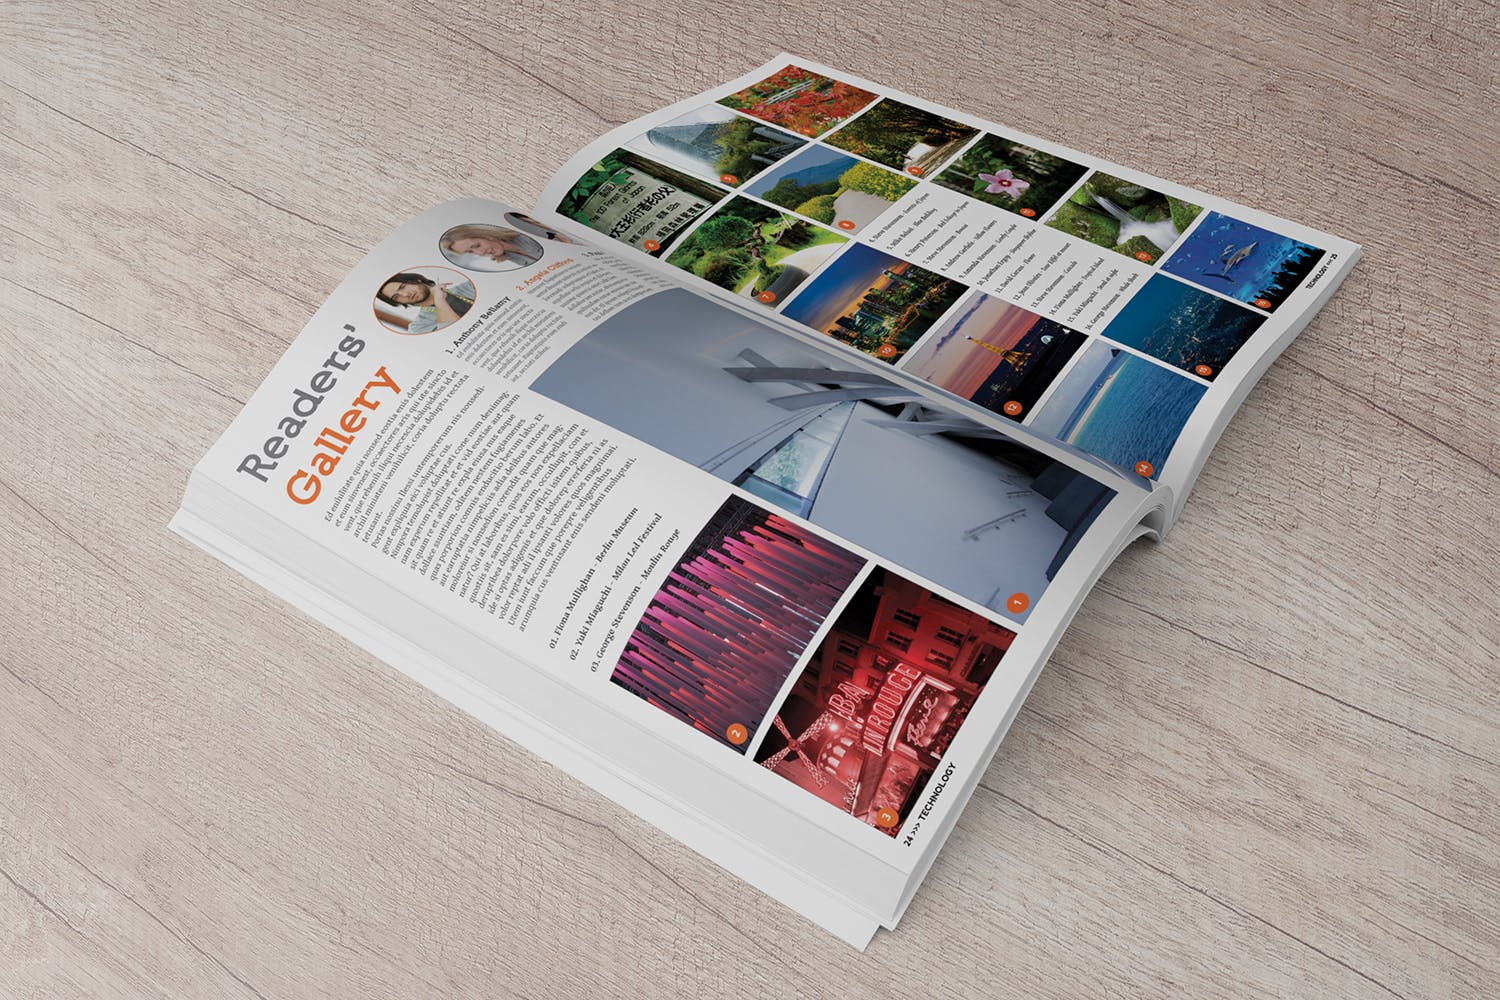 杂志内页排版设计45度角预览样机第一素材精选 Magazine Mockup 45 Degree插图(2)